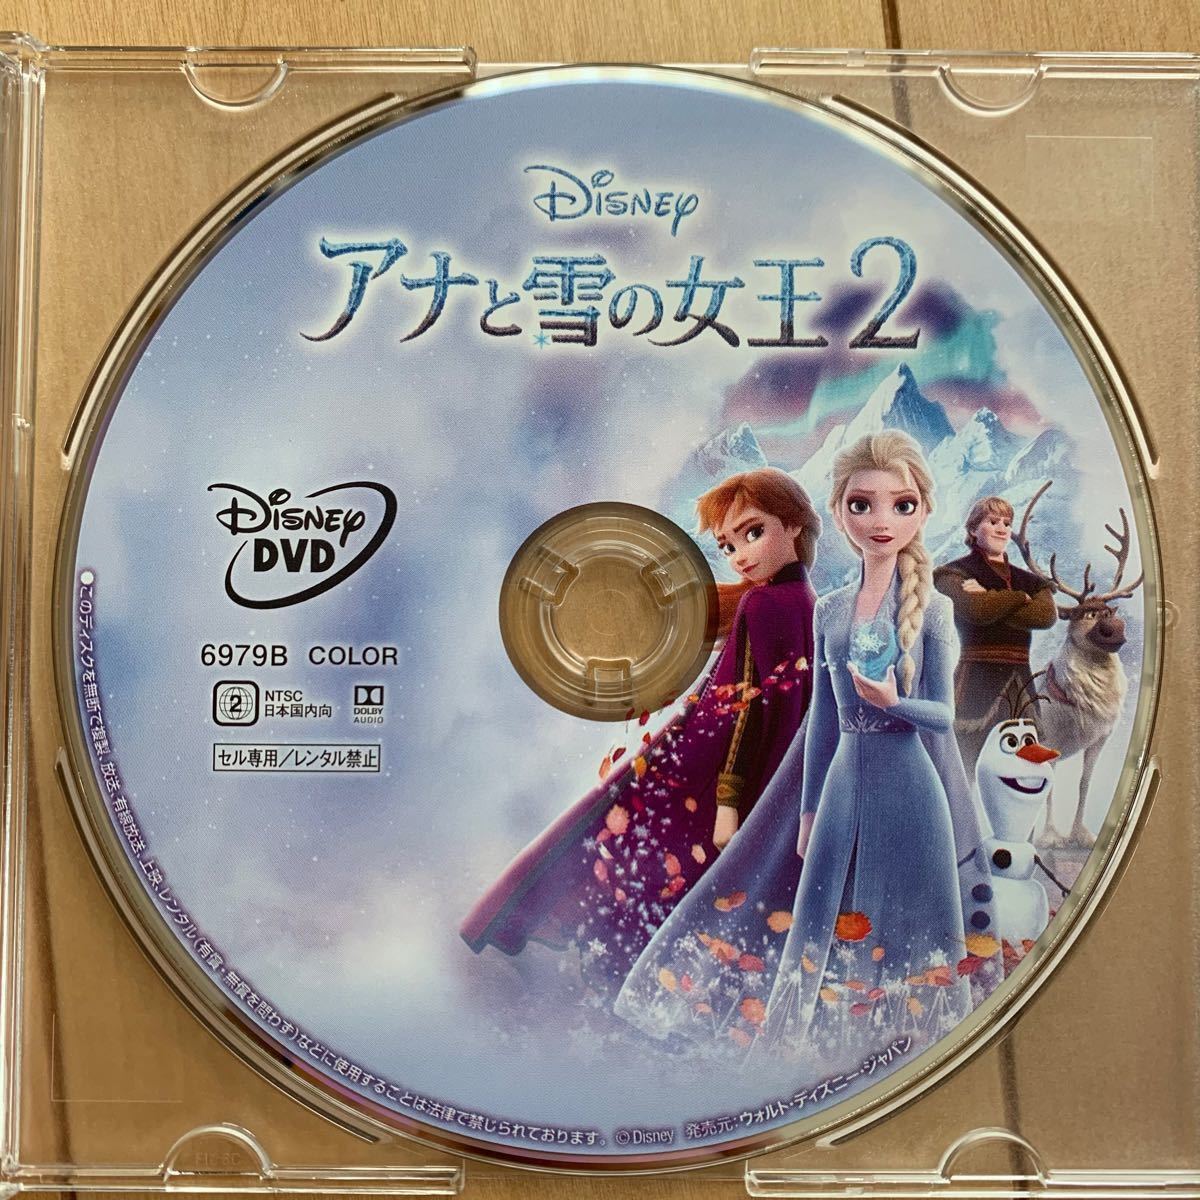 アナと雪の女王1&2 未使用DVD2枚セット【国内正規版】 新品未再生  ディズニー disney